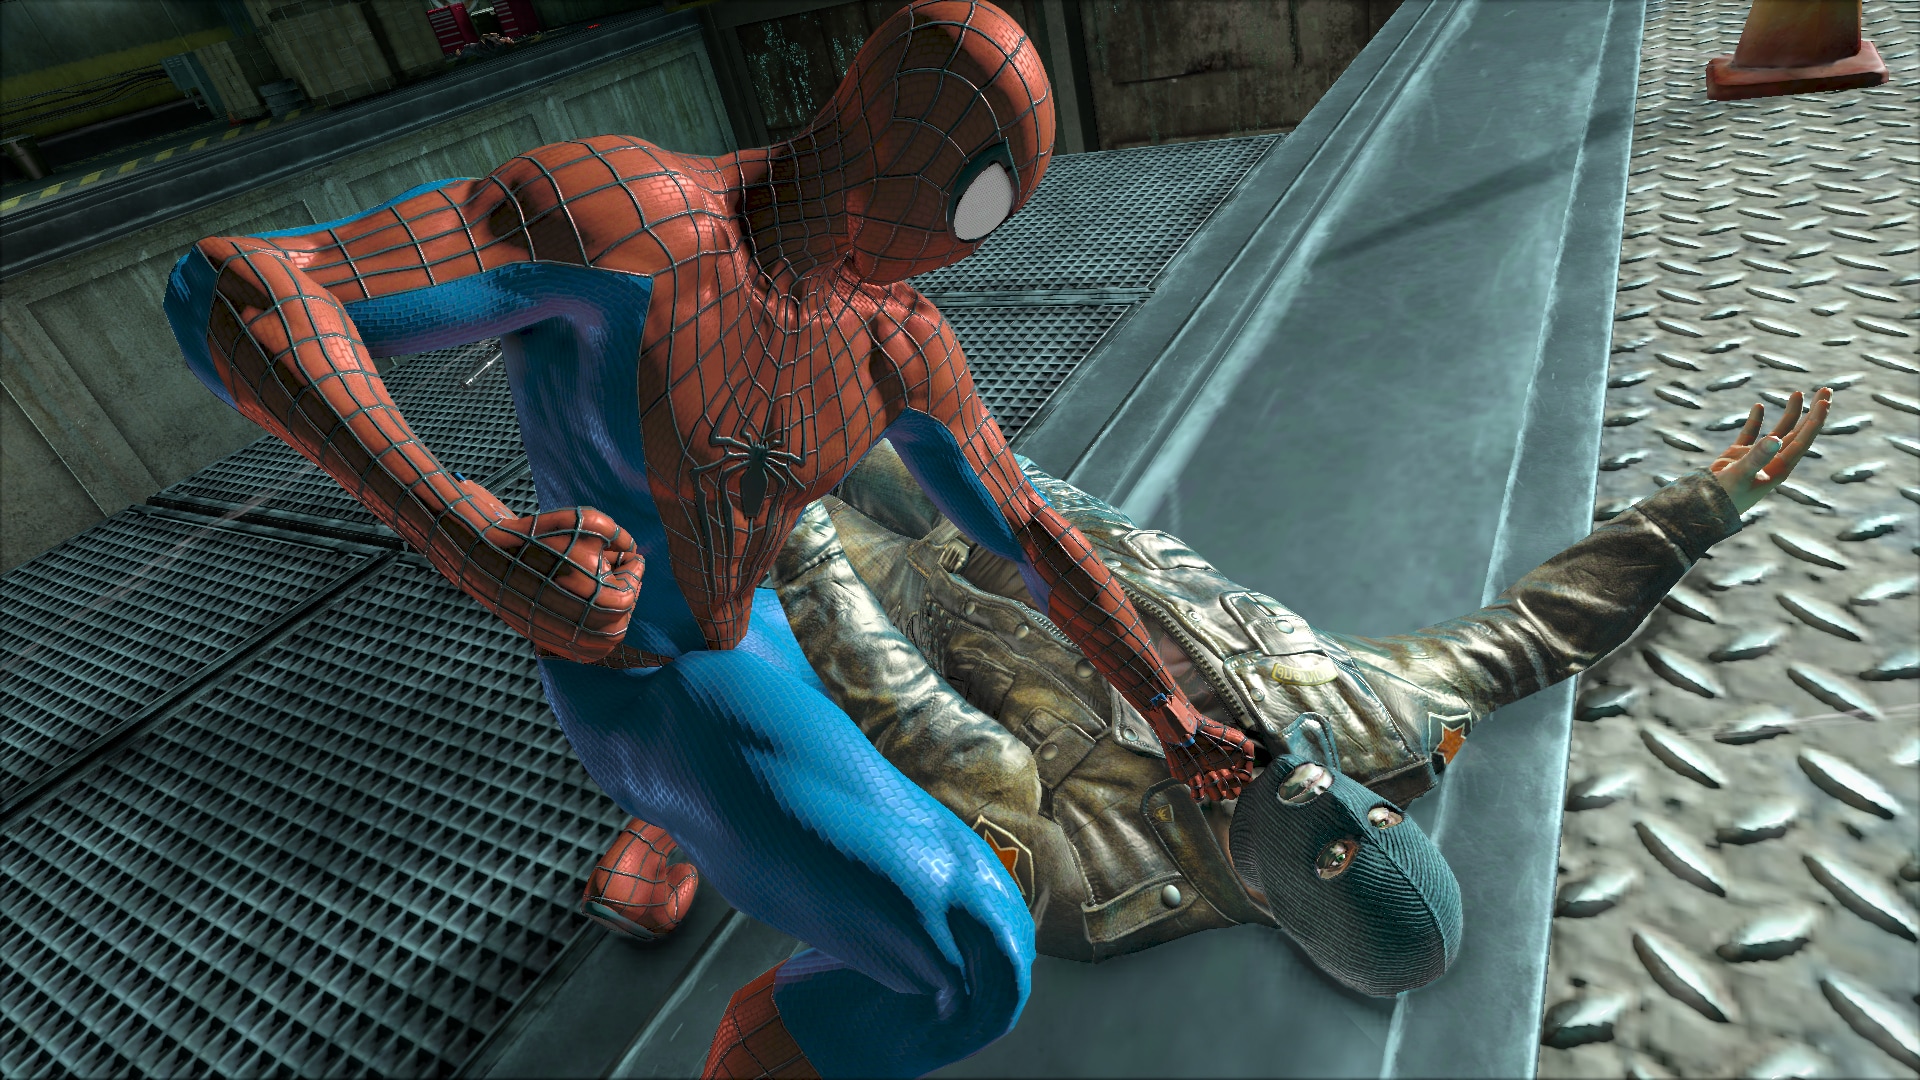 Игры человек против пауков. The amazing Spider-man (игра, 2012). The amazing Spider-man 2 игра. Spider man 2014 игра. Амазинг Спайдермен 2 игра.